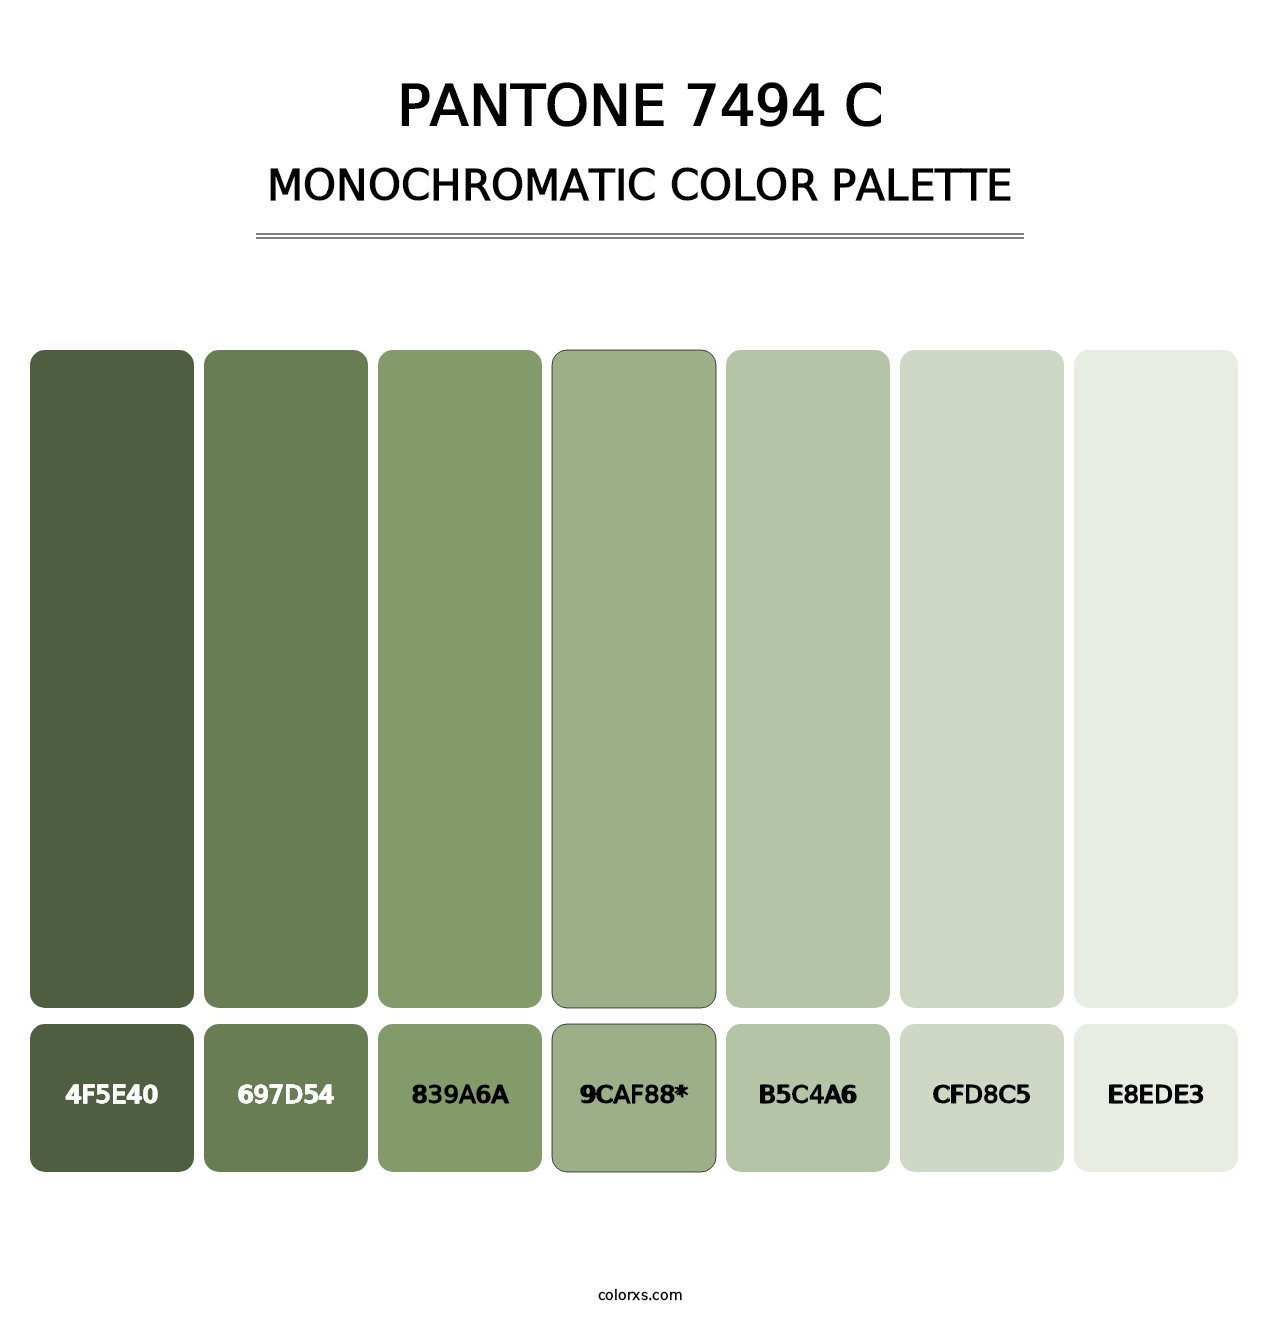 PANTONE 7494 C - Monochromatic Color Palette